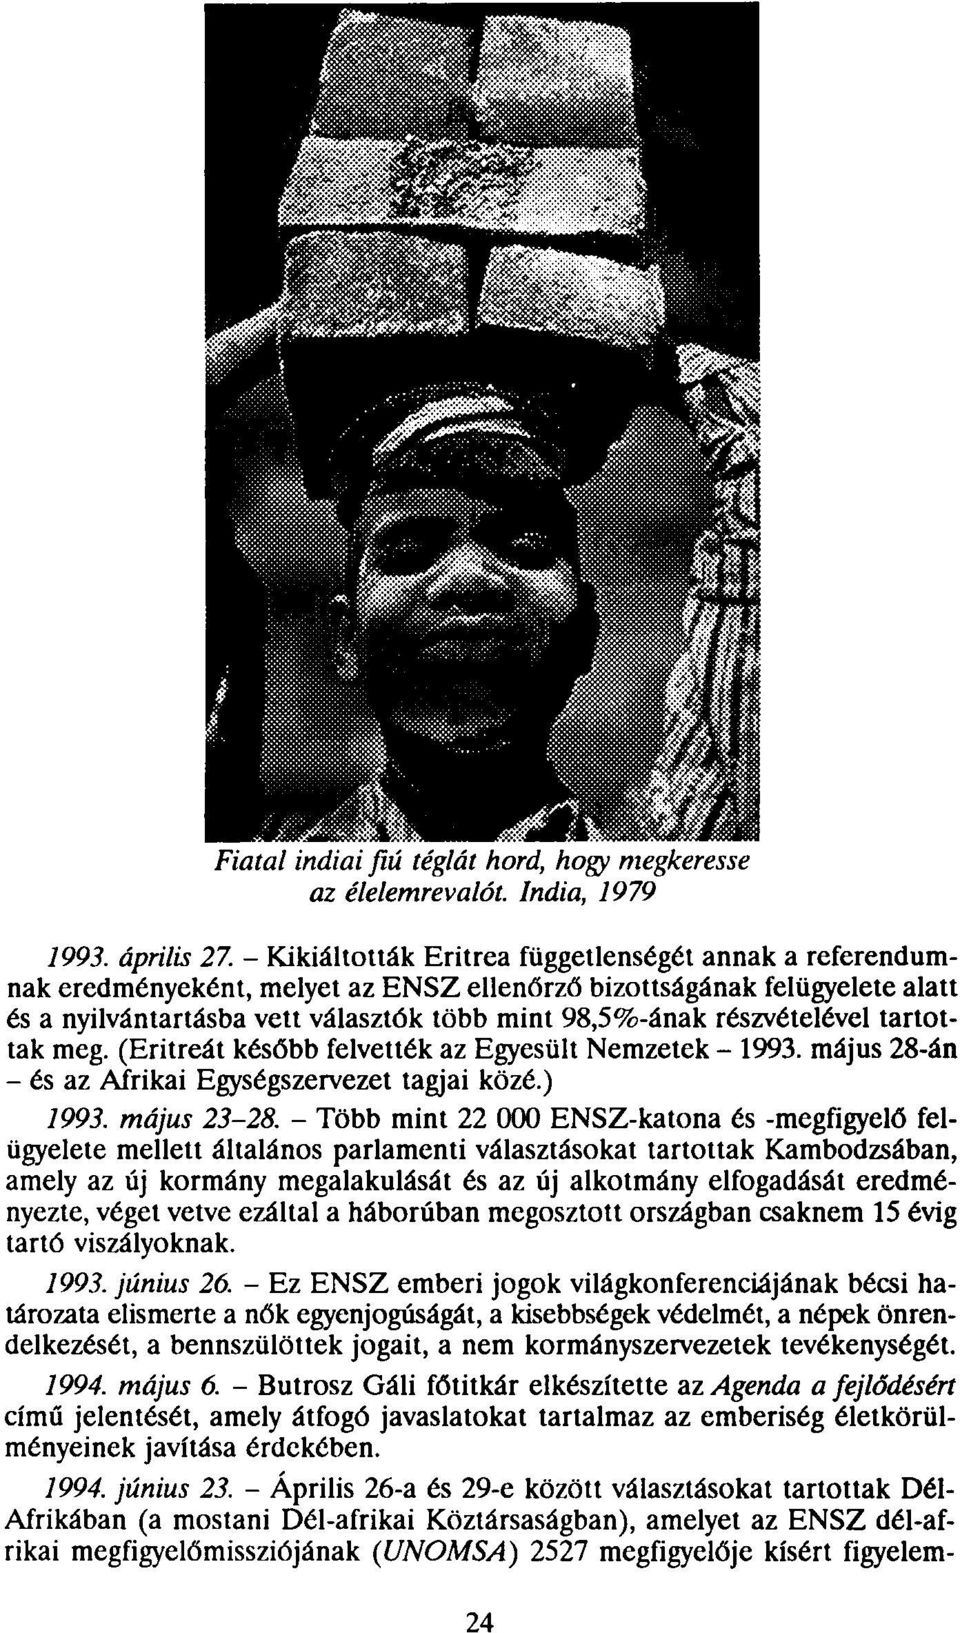 részvételével tartottak meg. (Eritreát később felvették az Egyesült Nemzetek - 1993. május 28-án - és az Afrikai Egységszervezet tagjai közé.) 1993. május 23-28.